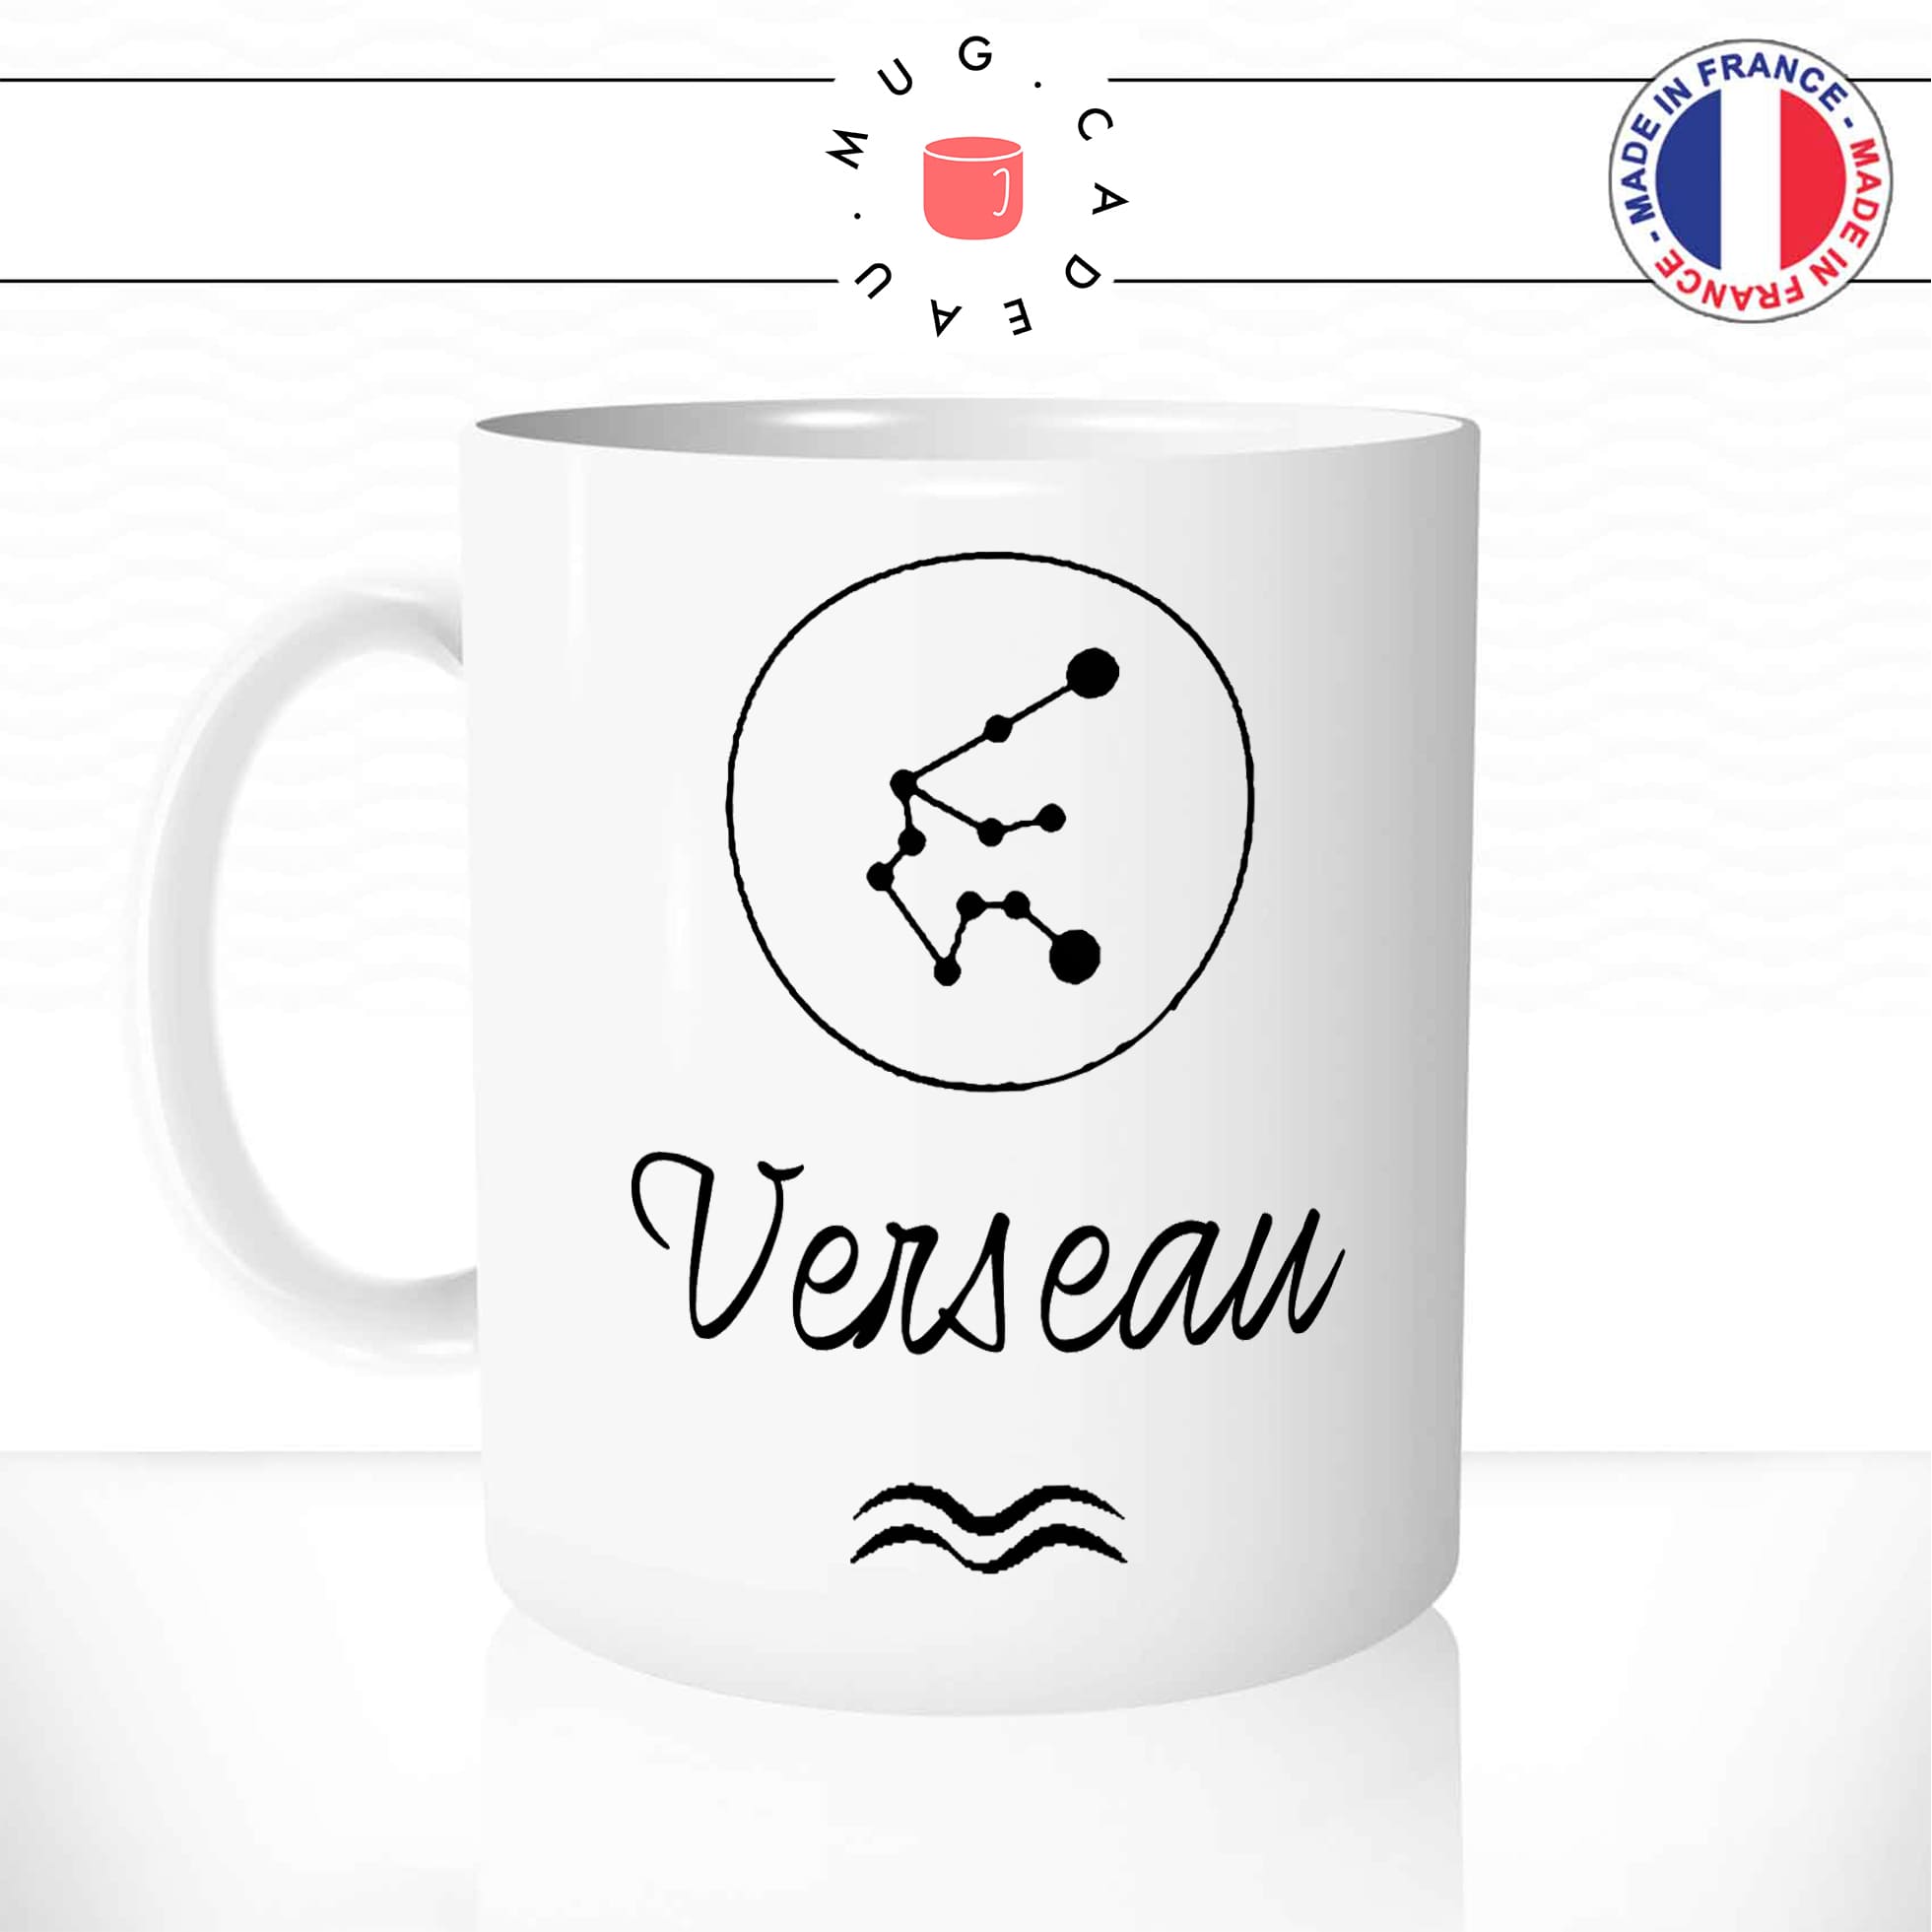 Mug Verseau - Constellation